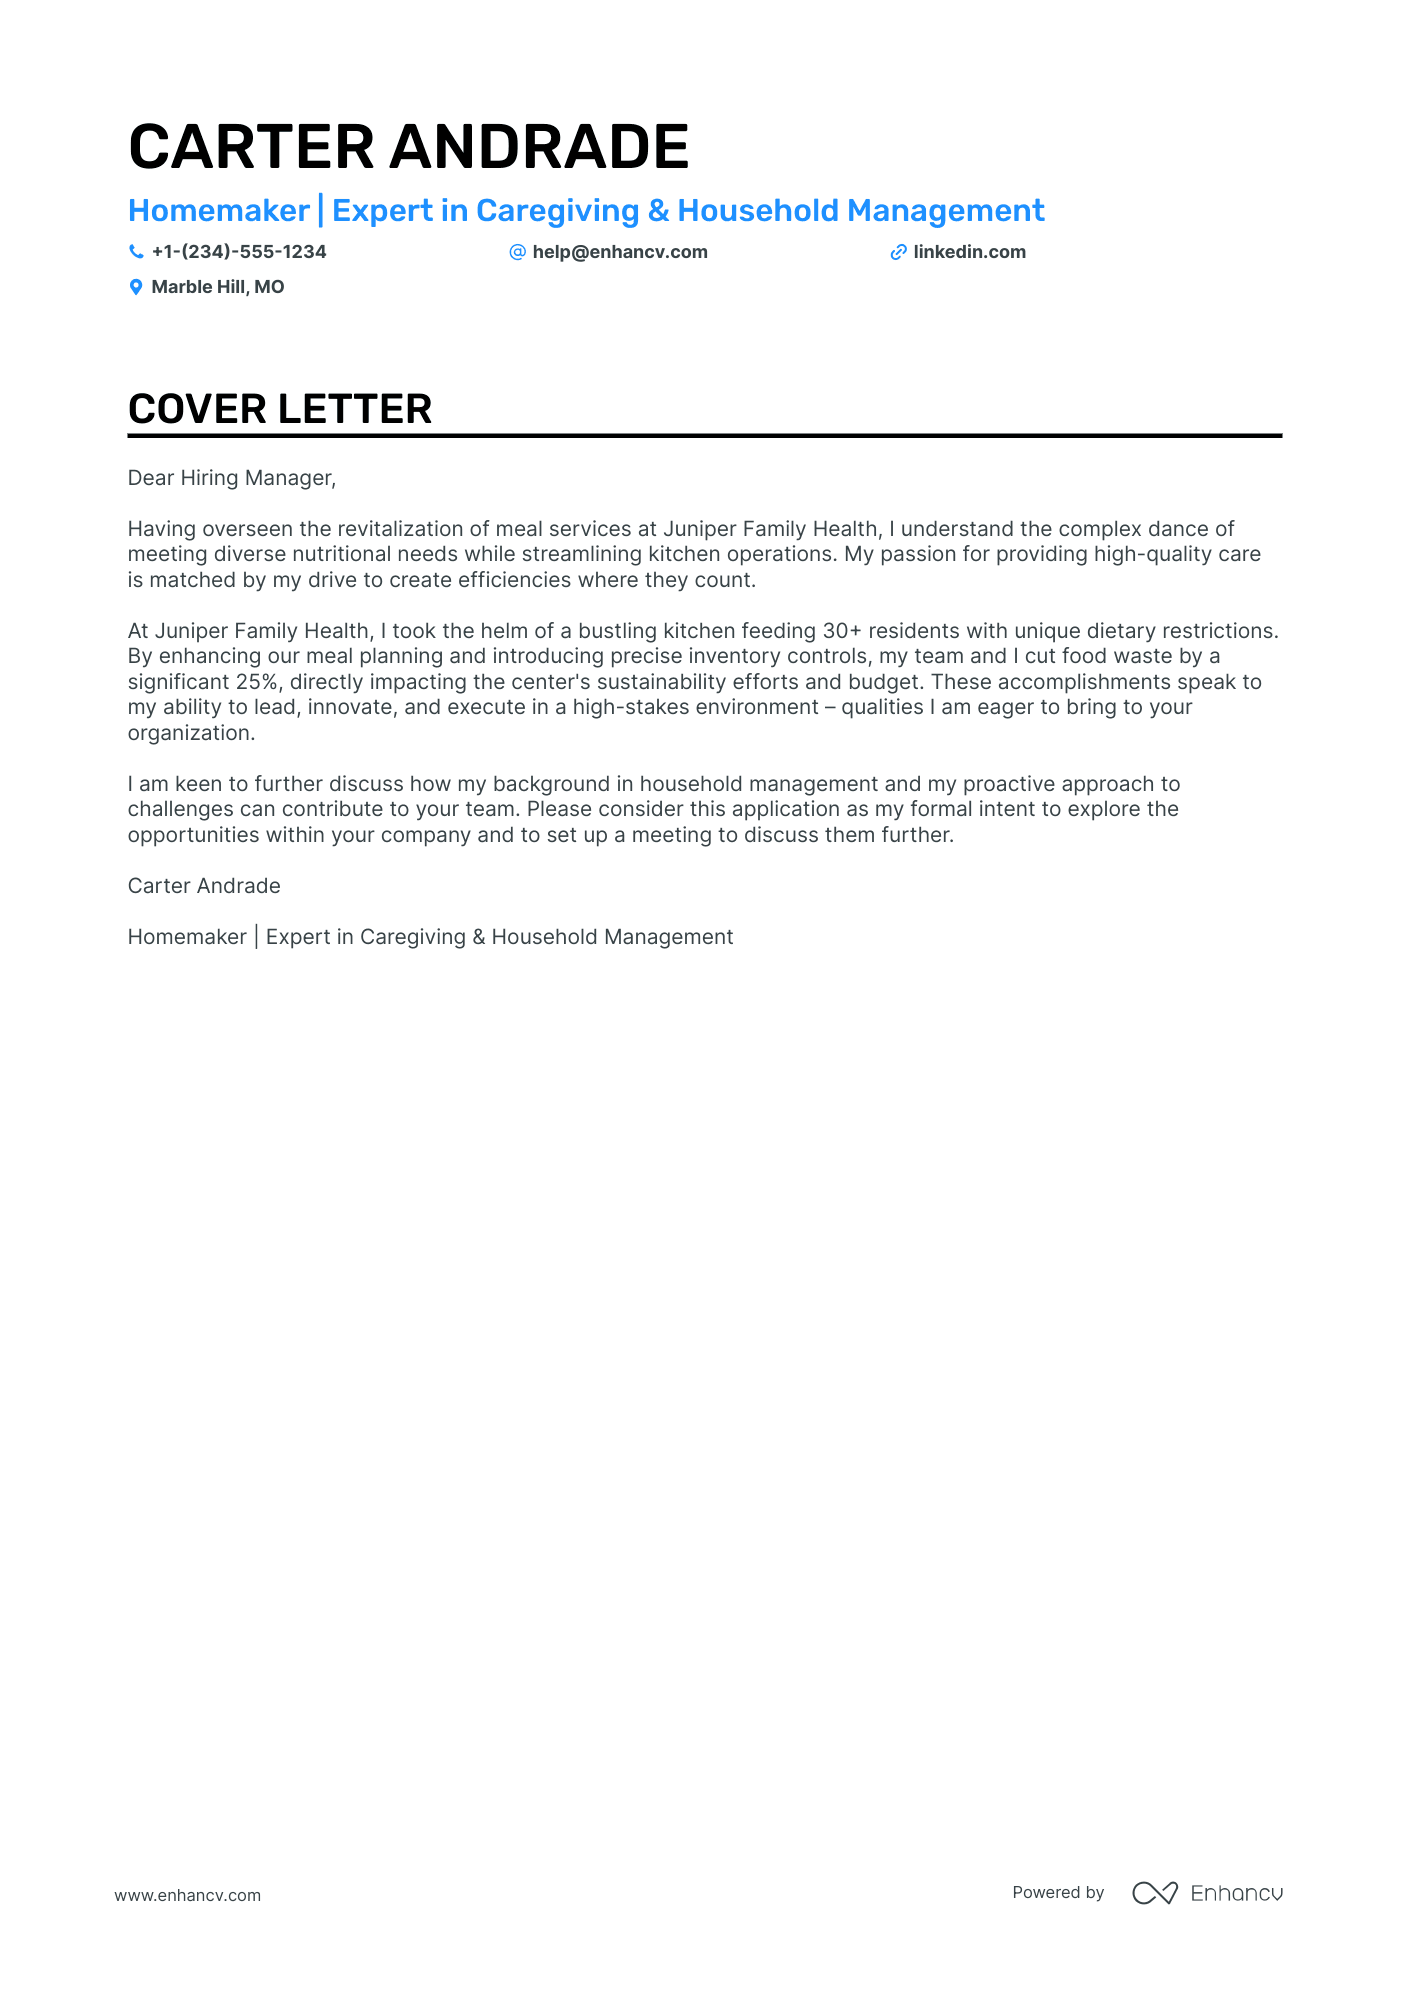 Homemaker cover letter